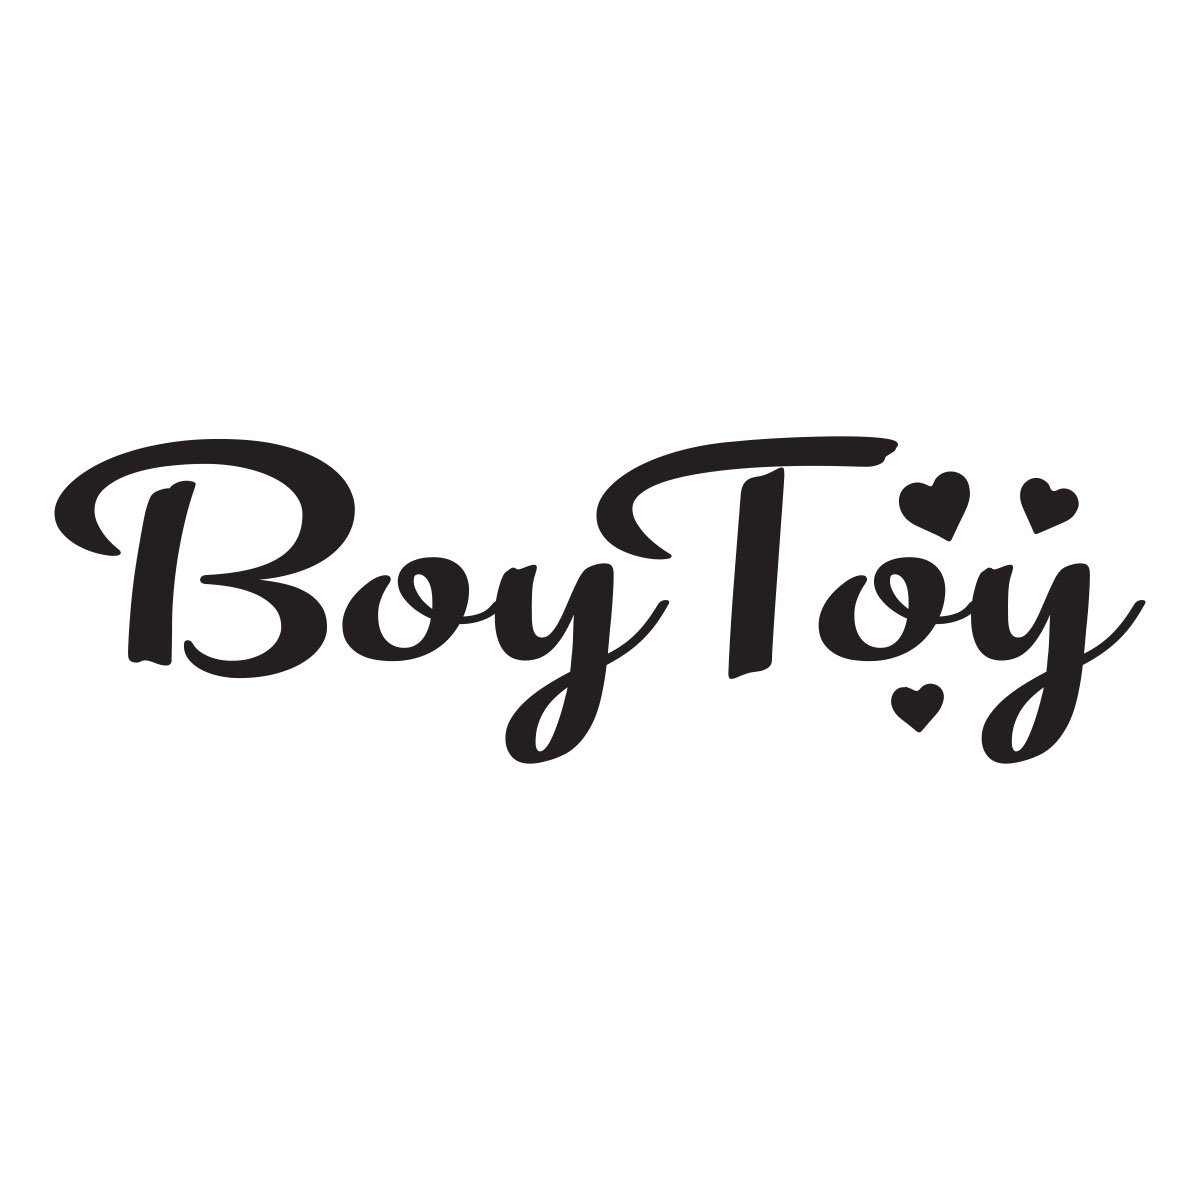 boy toy